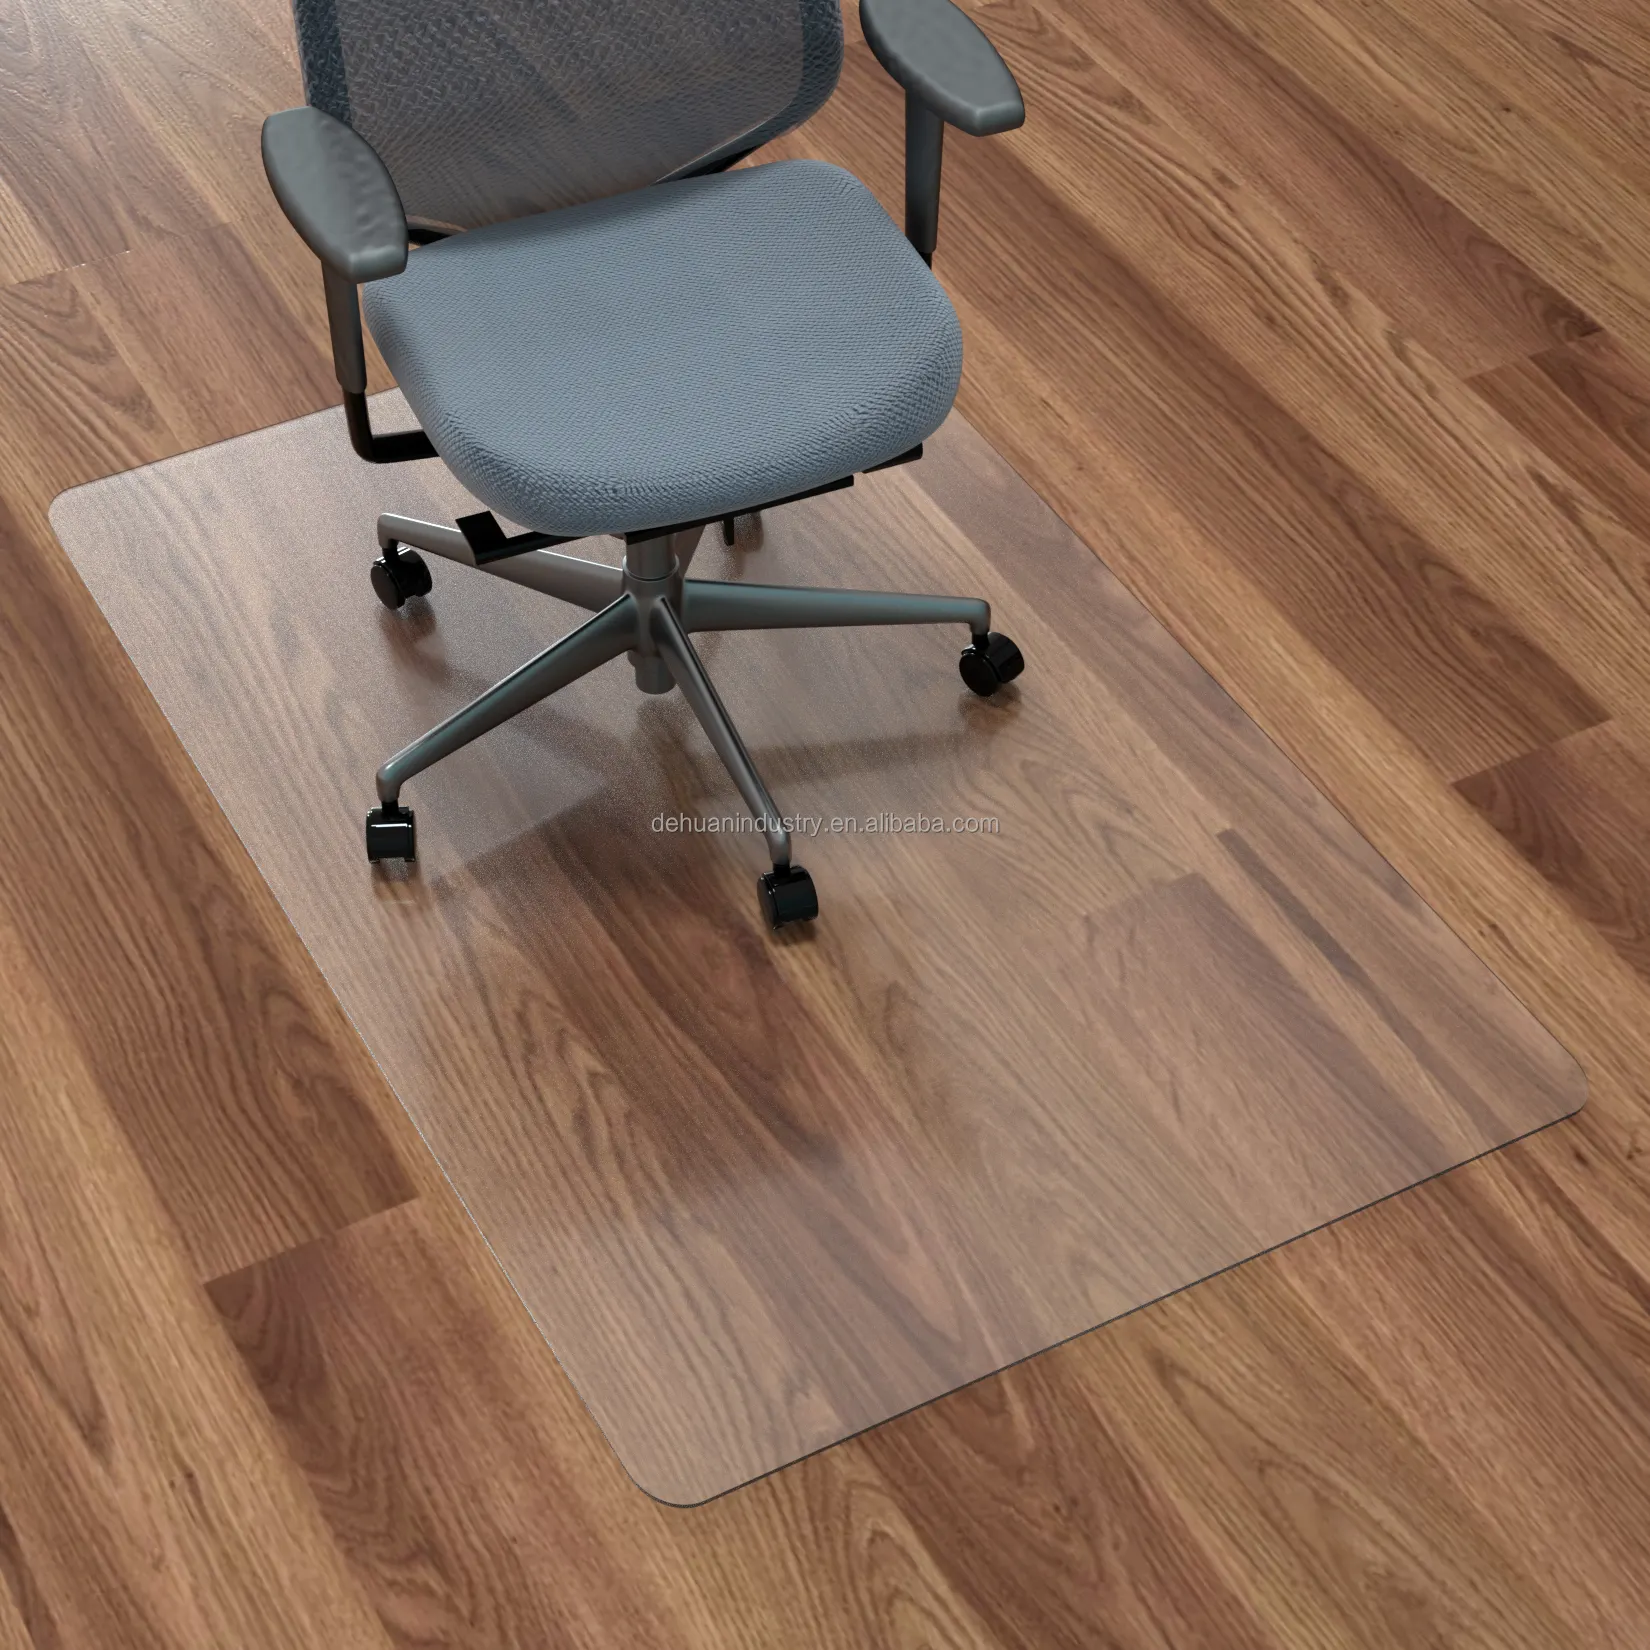 Özel toptan pet kaymaz sandalye minderi halı zemin koruyucular rulo mat plastik temizle ofis koltuğu kat mat